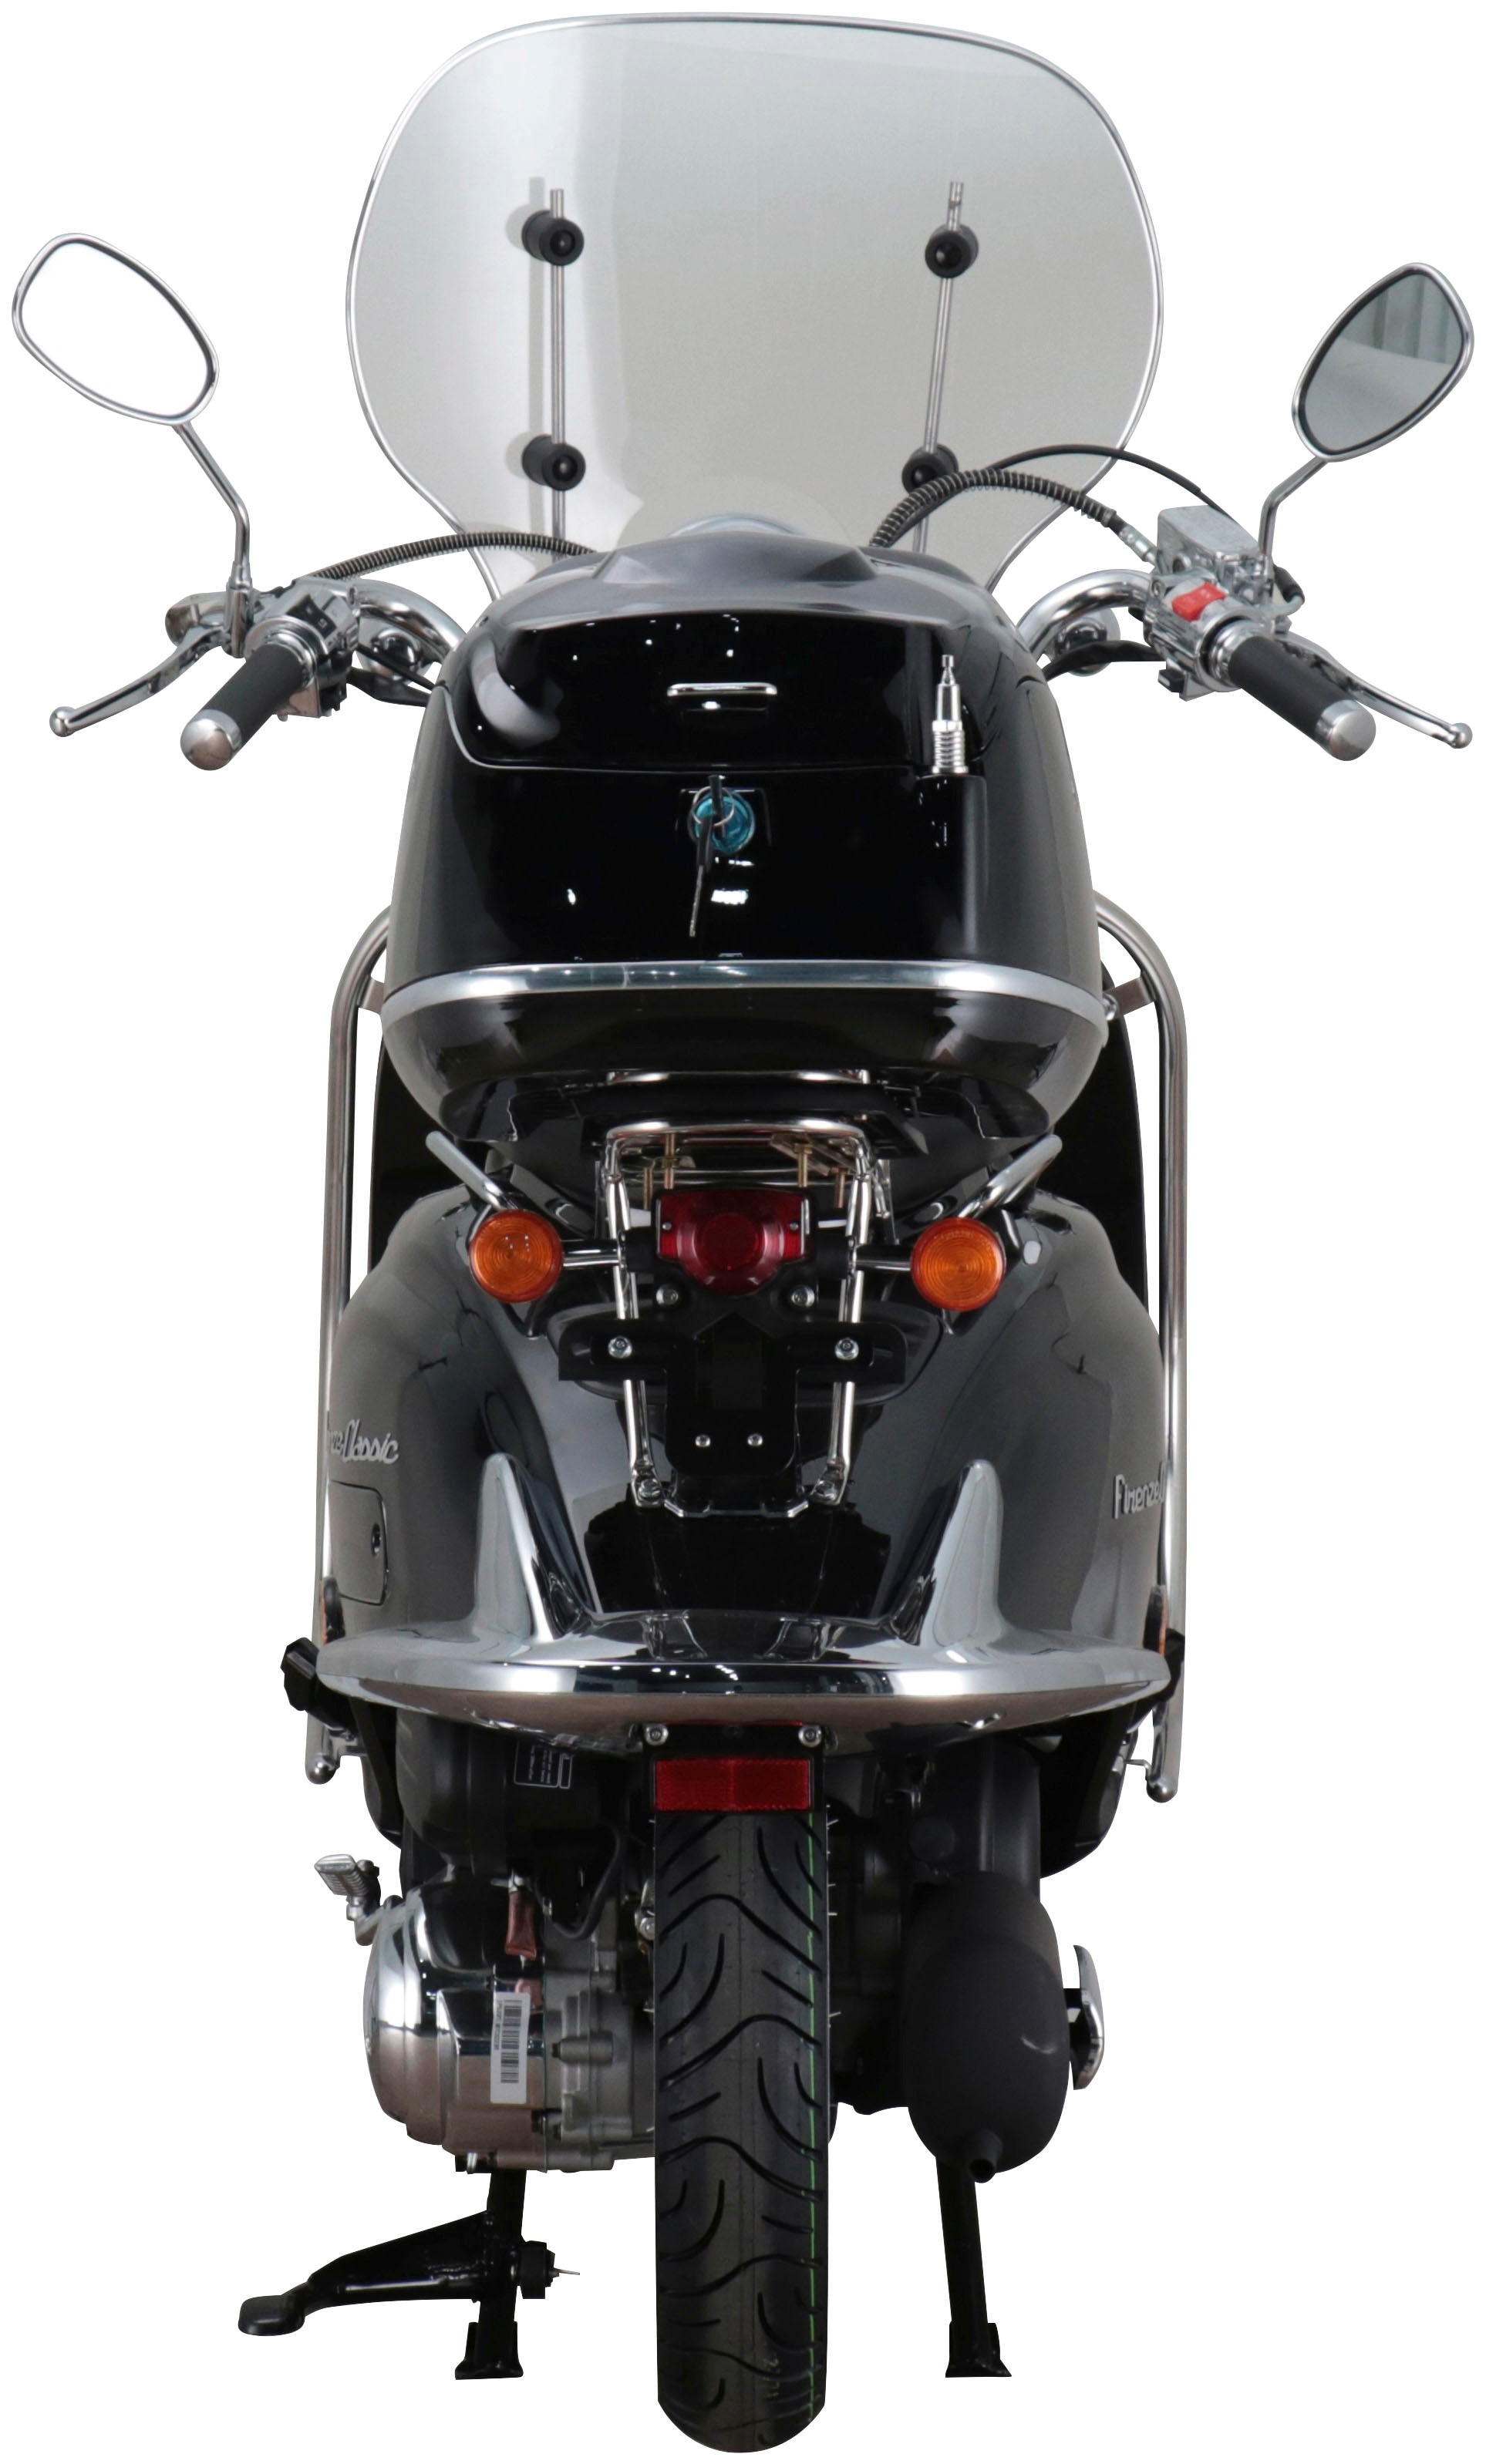 Alpha Motors Motorroller »Retro Firenze Classic«, 125 cm³, 85 km/h, Euro 5, 8,6 PS, (Komplett-Set), mit Lenkerschloss und Windschild